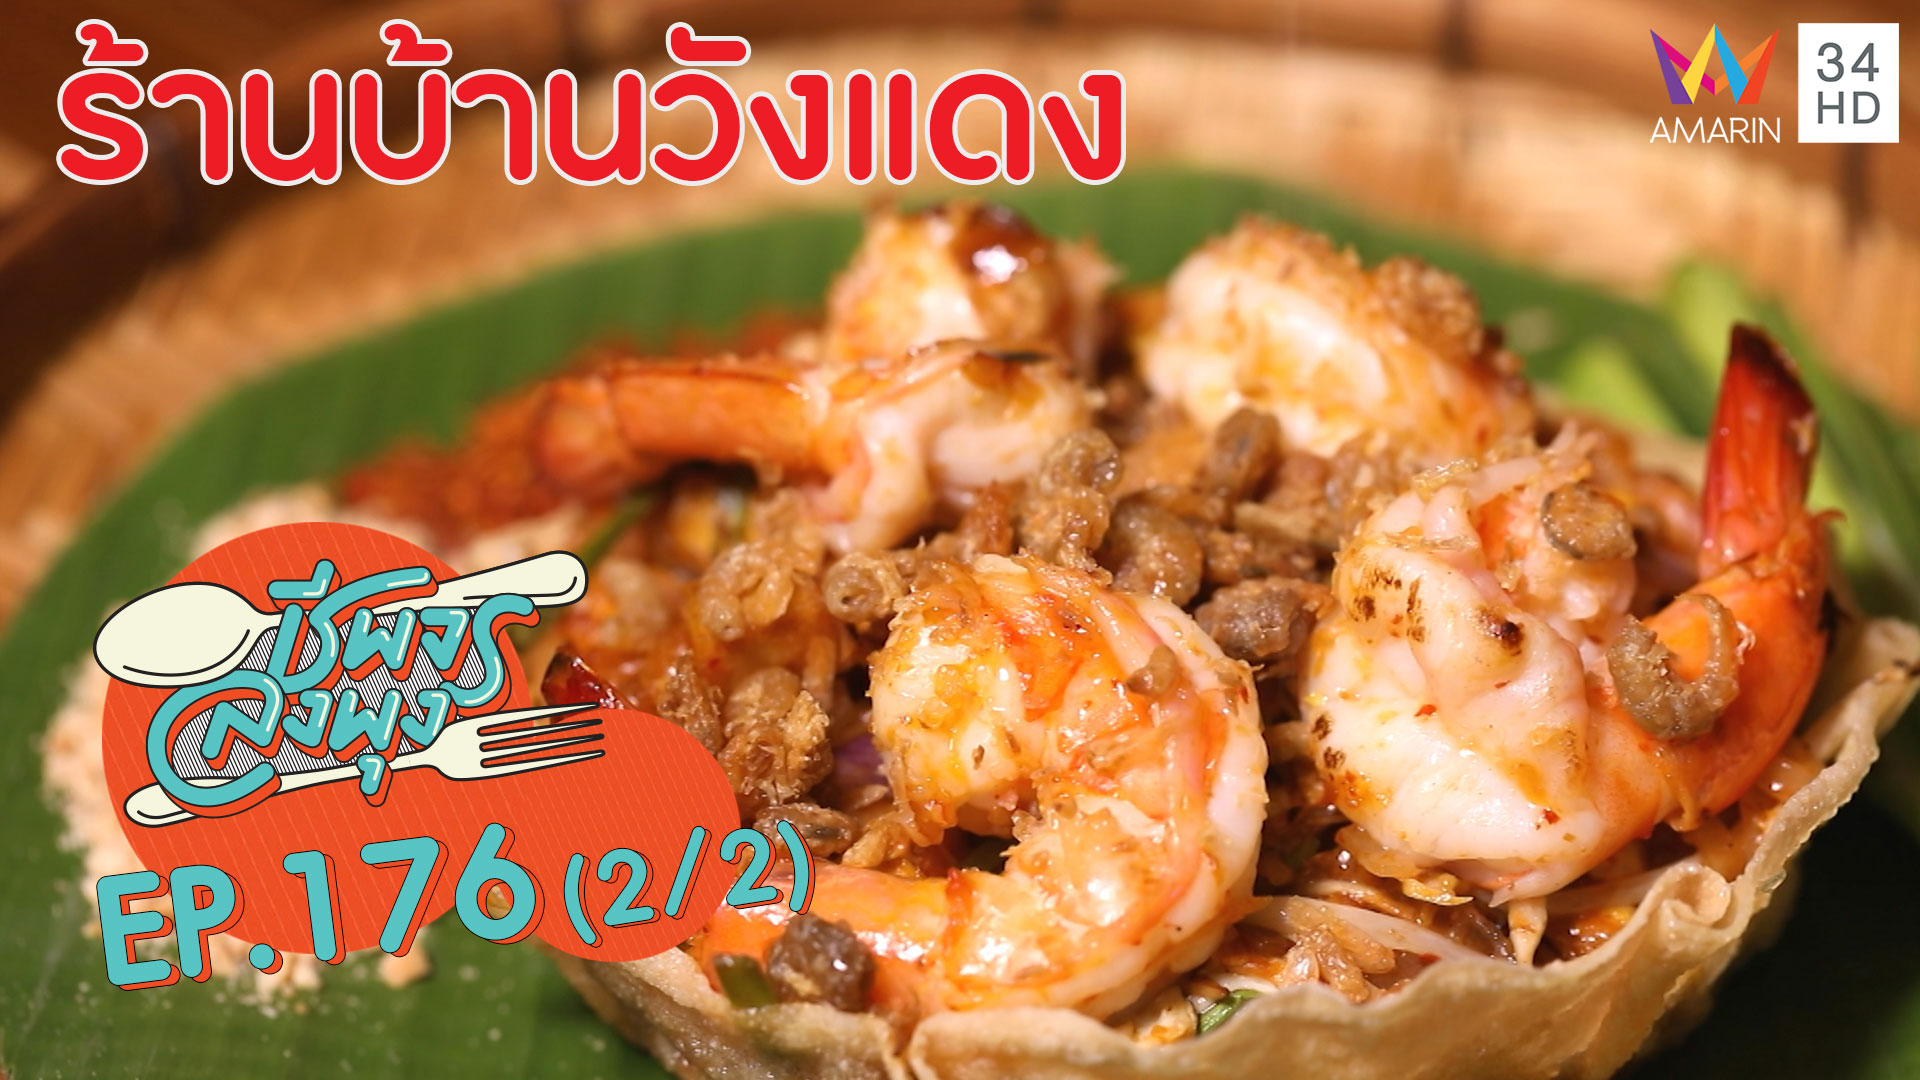 ชีพจรลงพุง ซีซั่น 5 | ร้านบ้านวังแดงอาหารไทยรสชาติจัดจ้านโดนใจ! | 11 ธ.ค. 62 (2/2)